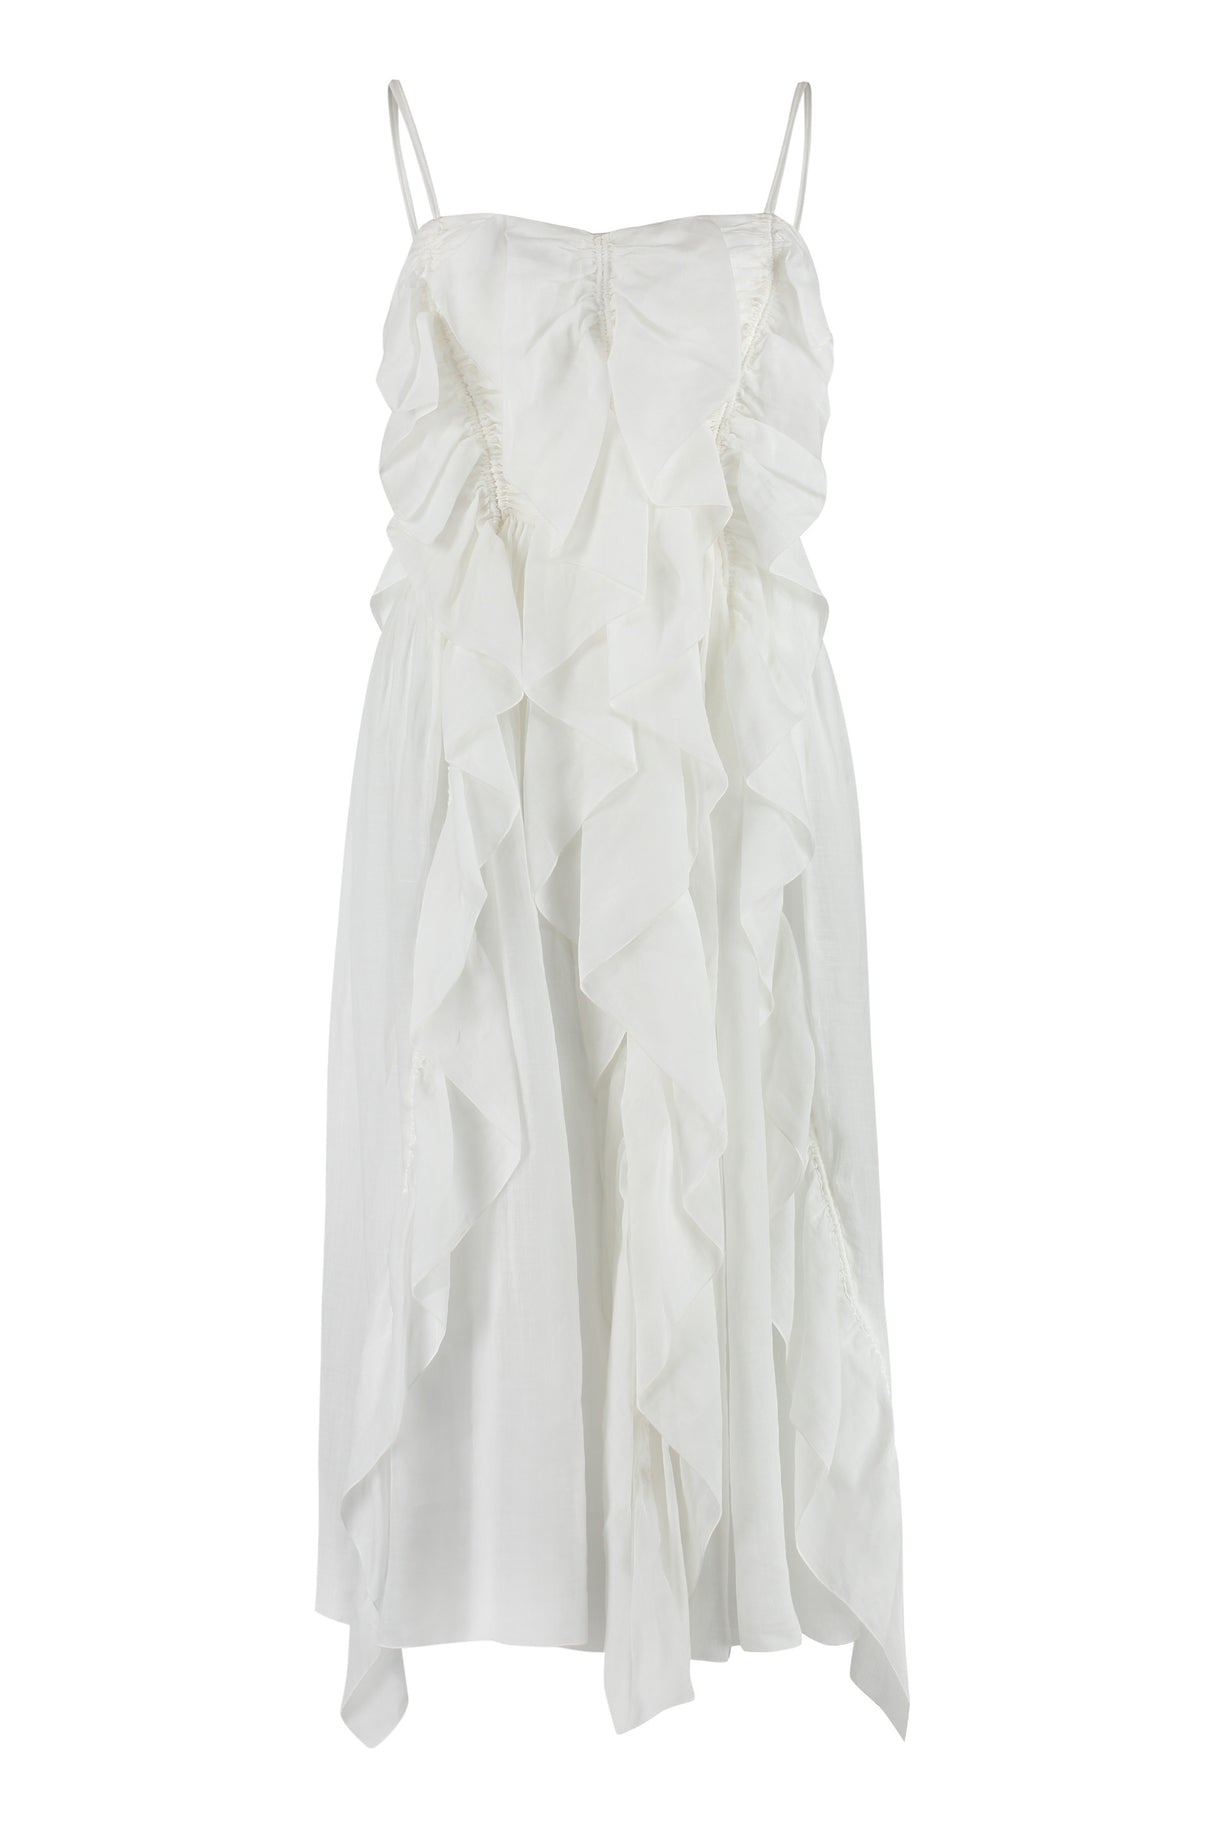 Váy ramie trắng cổ áo đơn giản với các chi tiết nhún dành cho phụ nữ